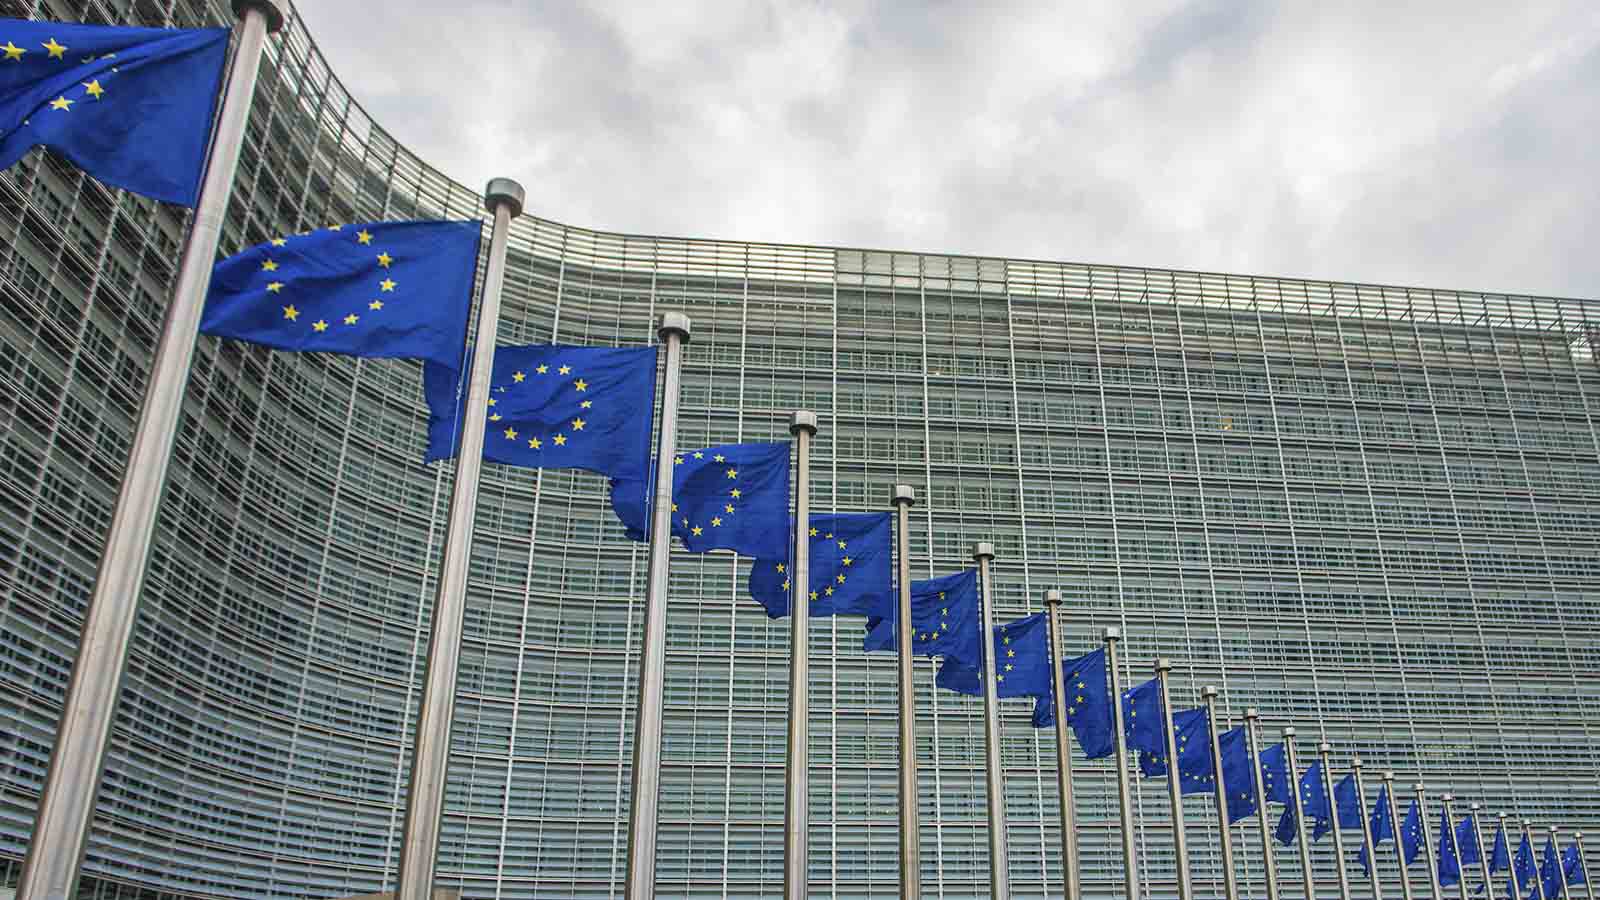 דגלי האיחוד האירופי בבלגיה (צילום: glen photo / Shutterstock).